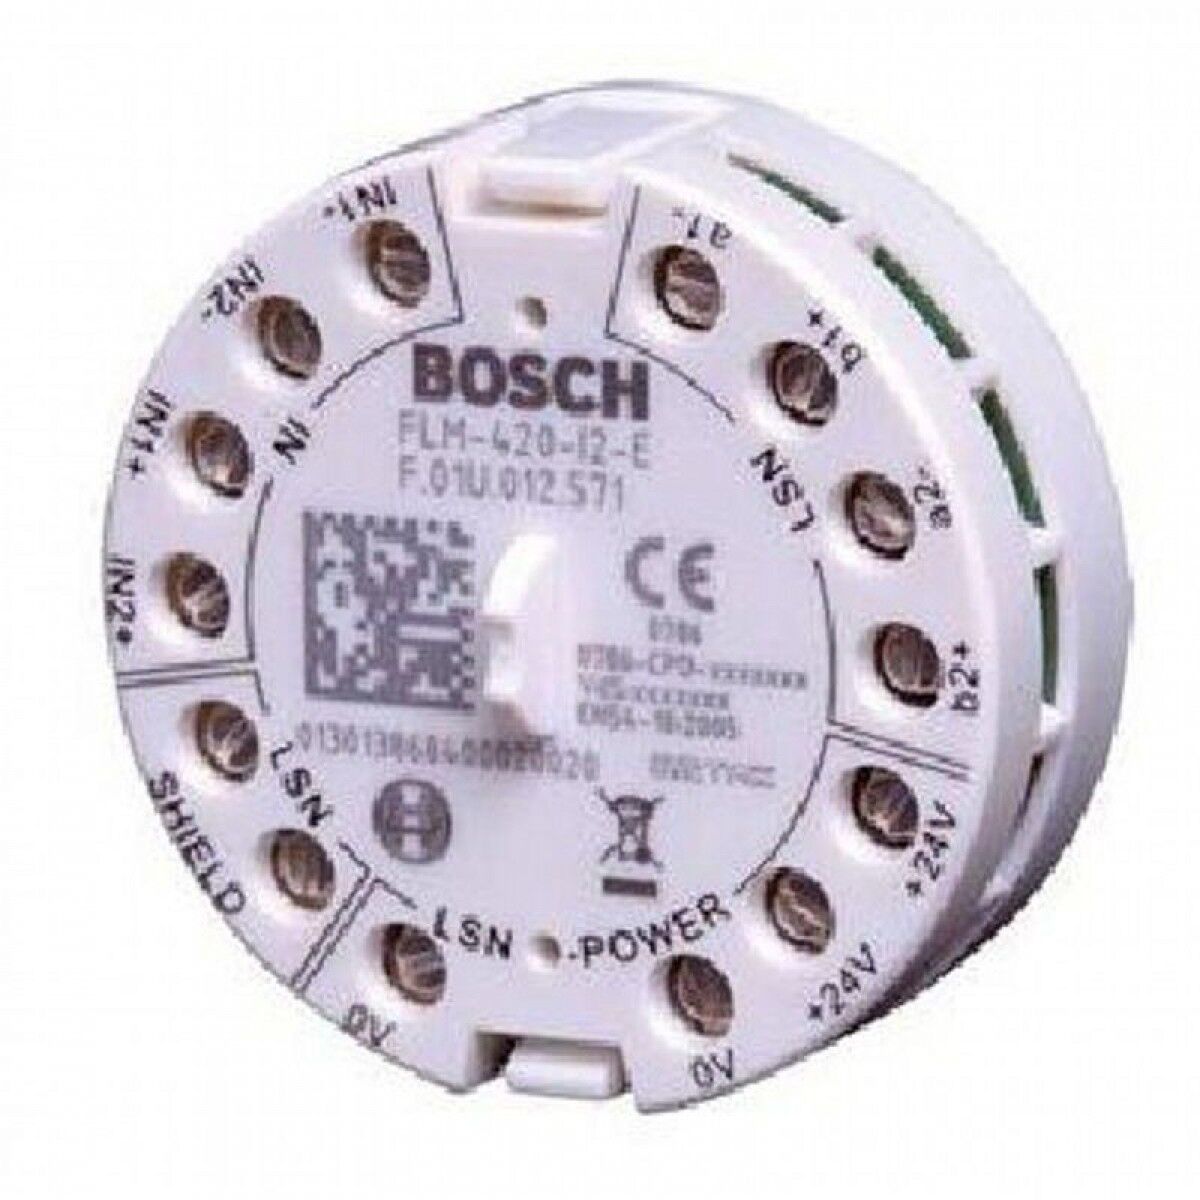 Интерфейсный модуль 2 входов, встраиваемый Bosch flm-420-i2-e